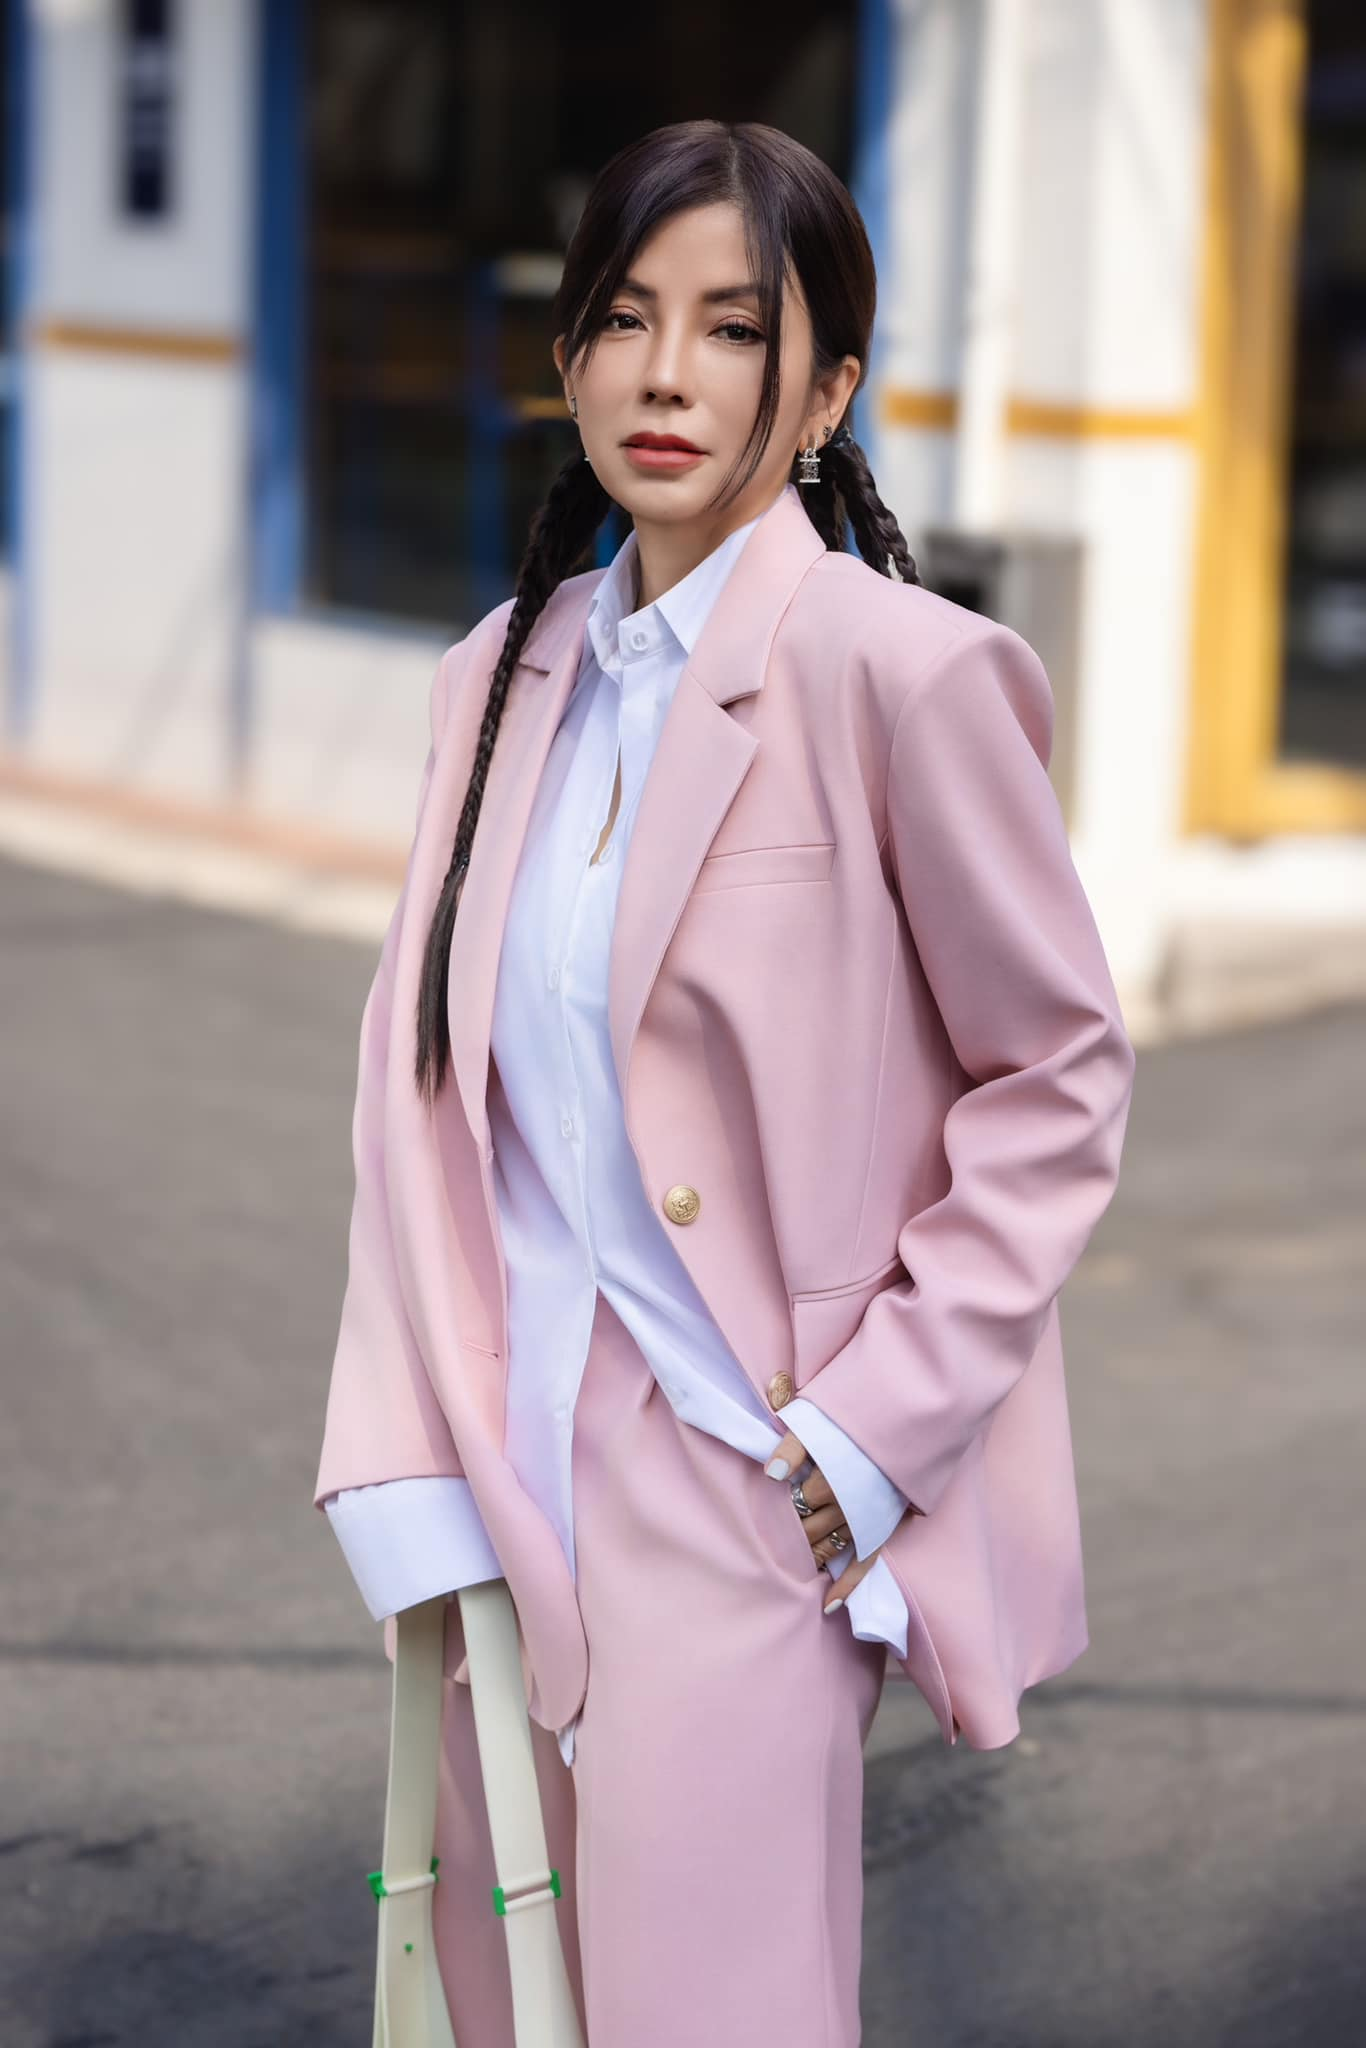 Chị Ngô Kim Thoa - nhà sáng lập và chủ sở hữu thương hiệu thời trang Angela Ngo.